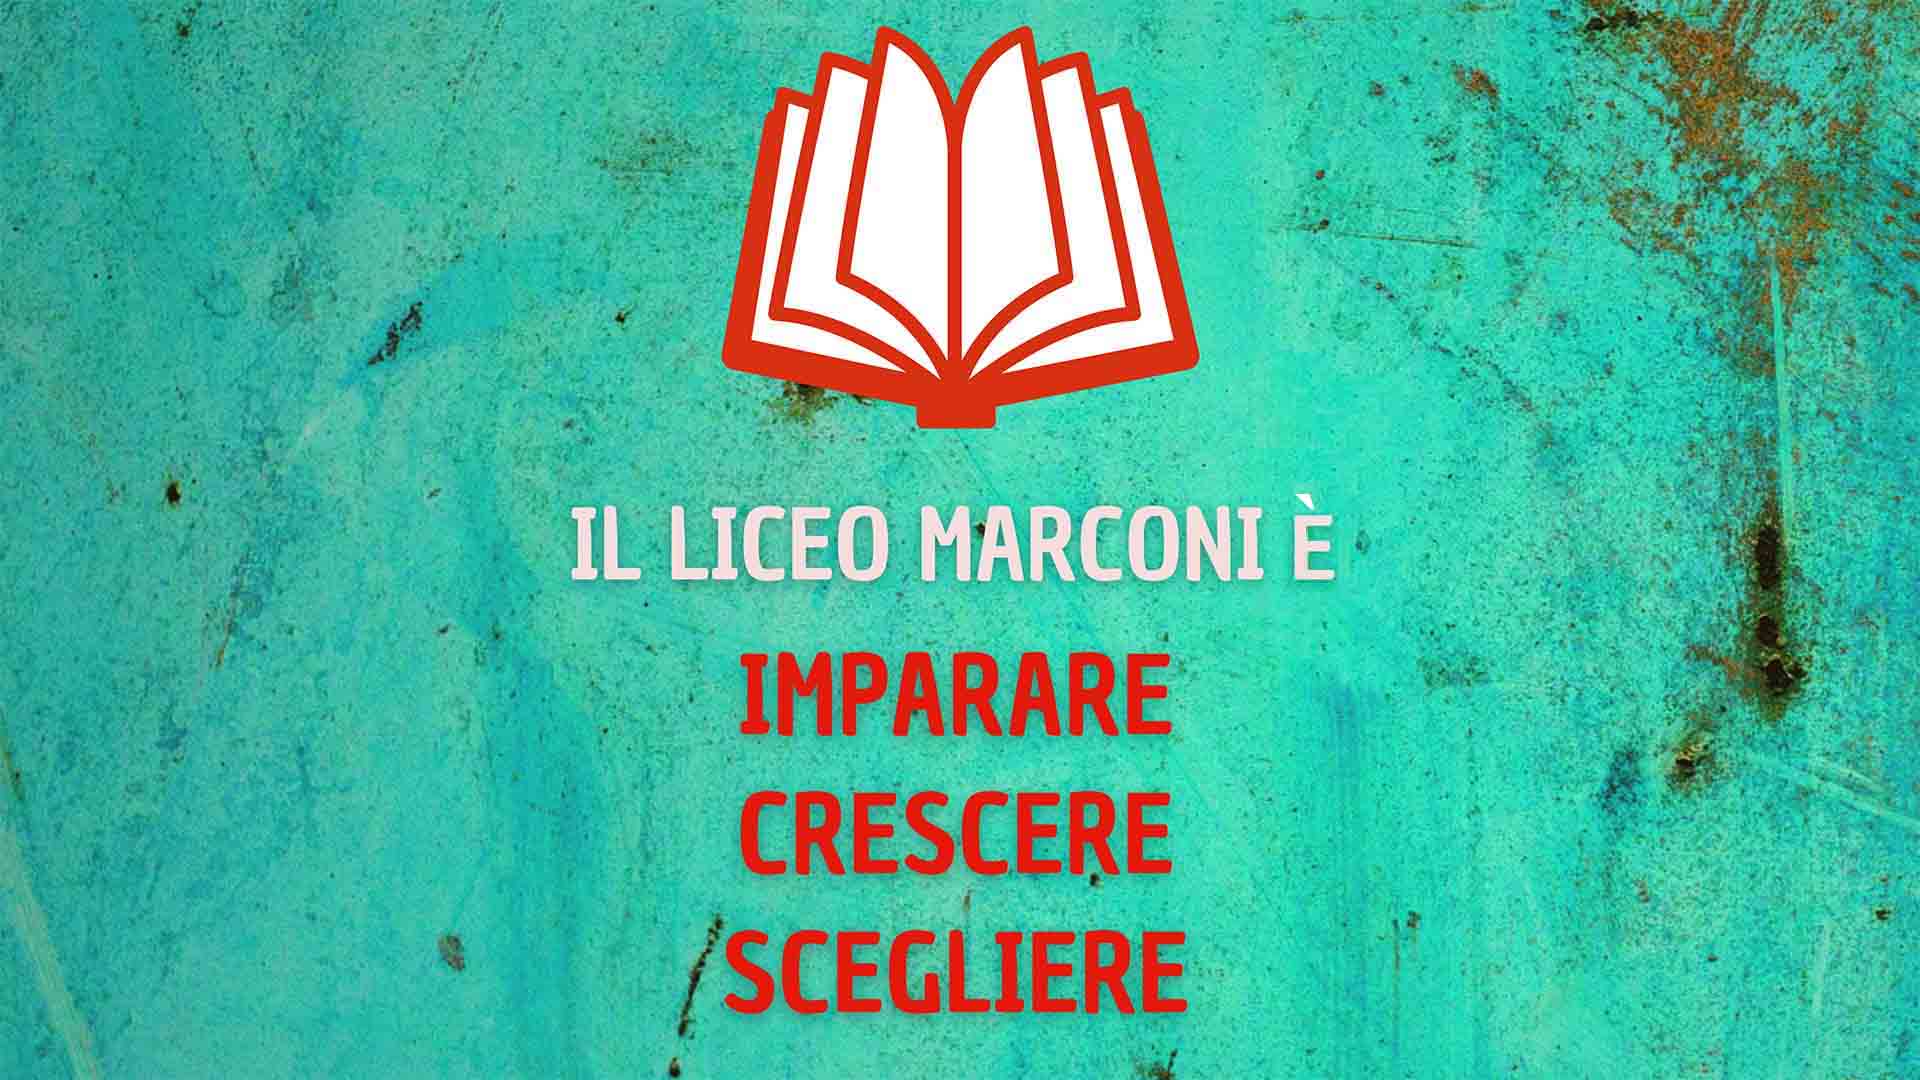 Liceo Marconi - Imparare, Crescere e Scegliere